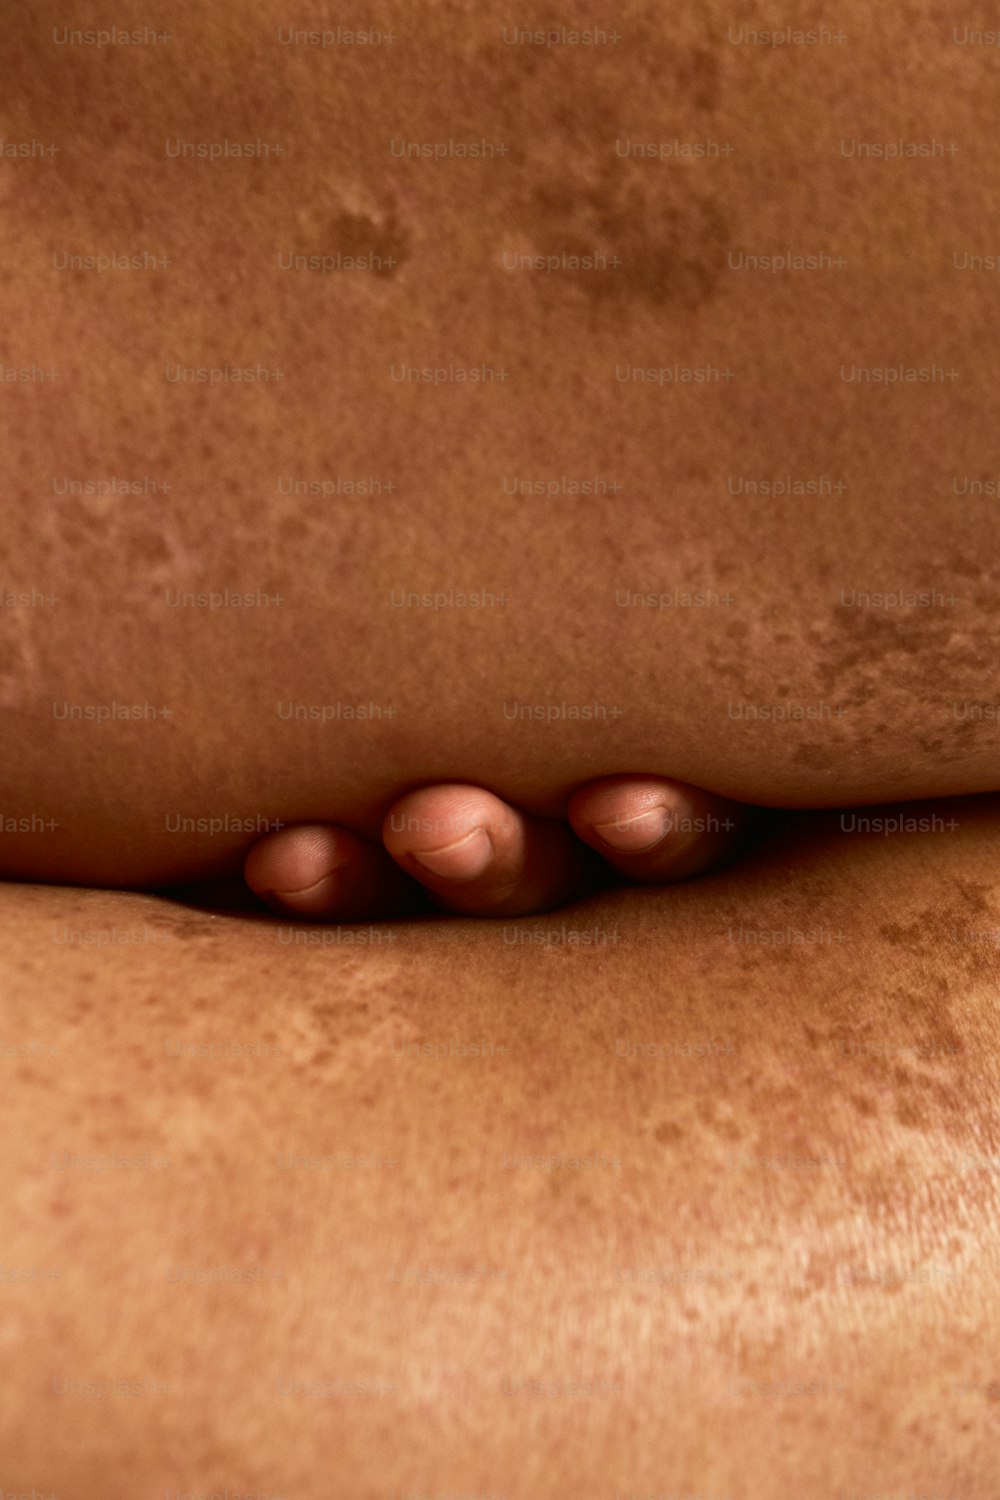 Un primer plano de la espalda de una persona con acné